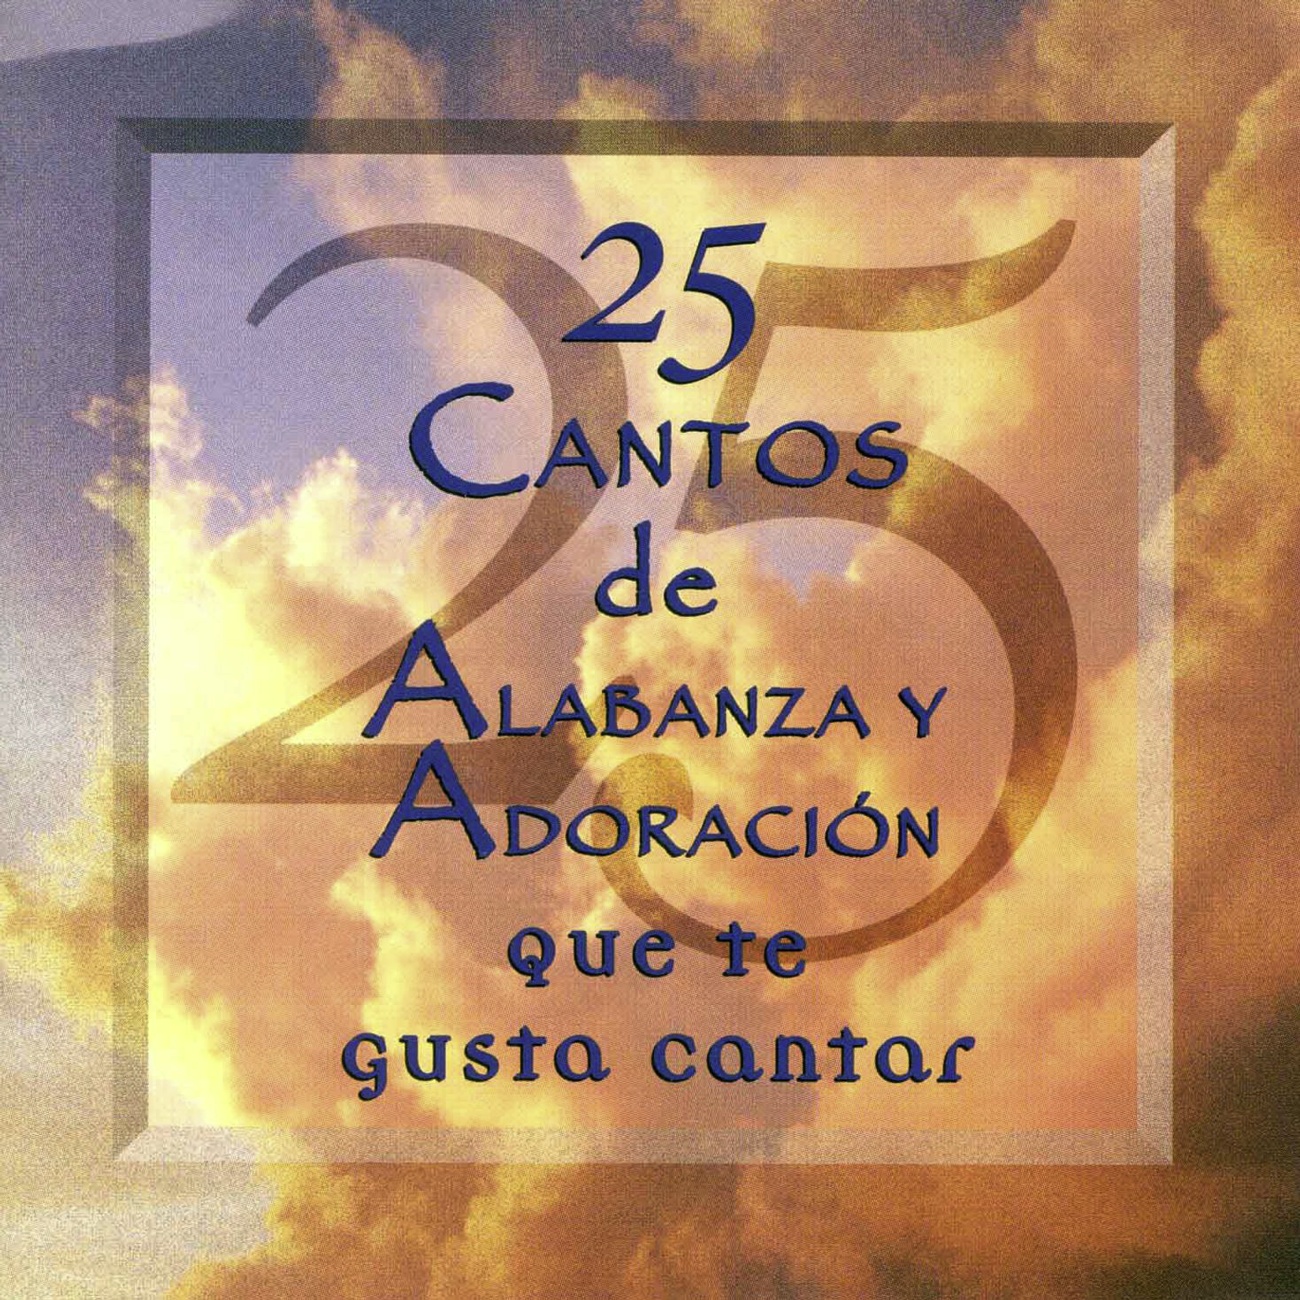 Our God Reigns (25 Cantos de Alabanza Y Adoracion Album Version)